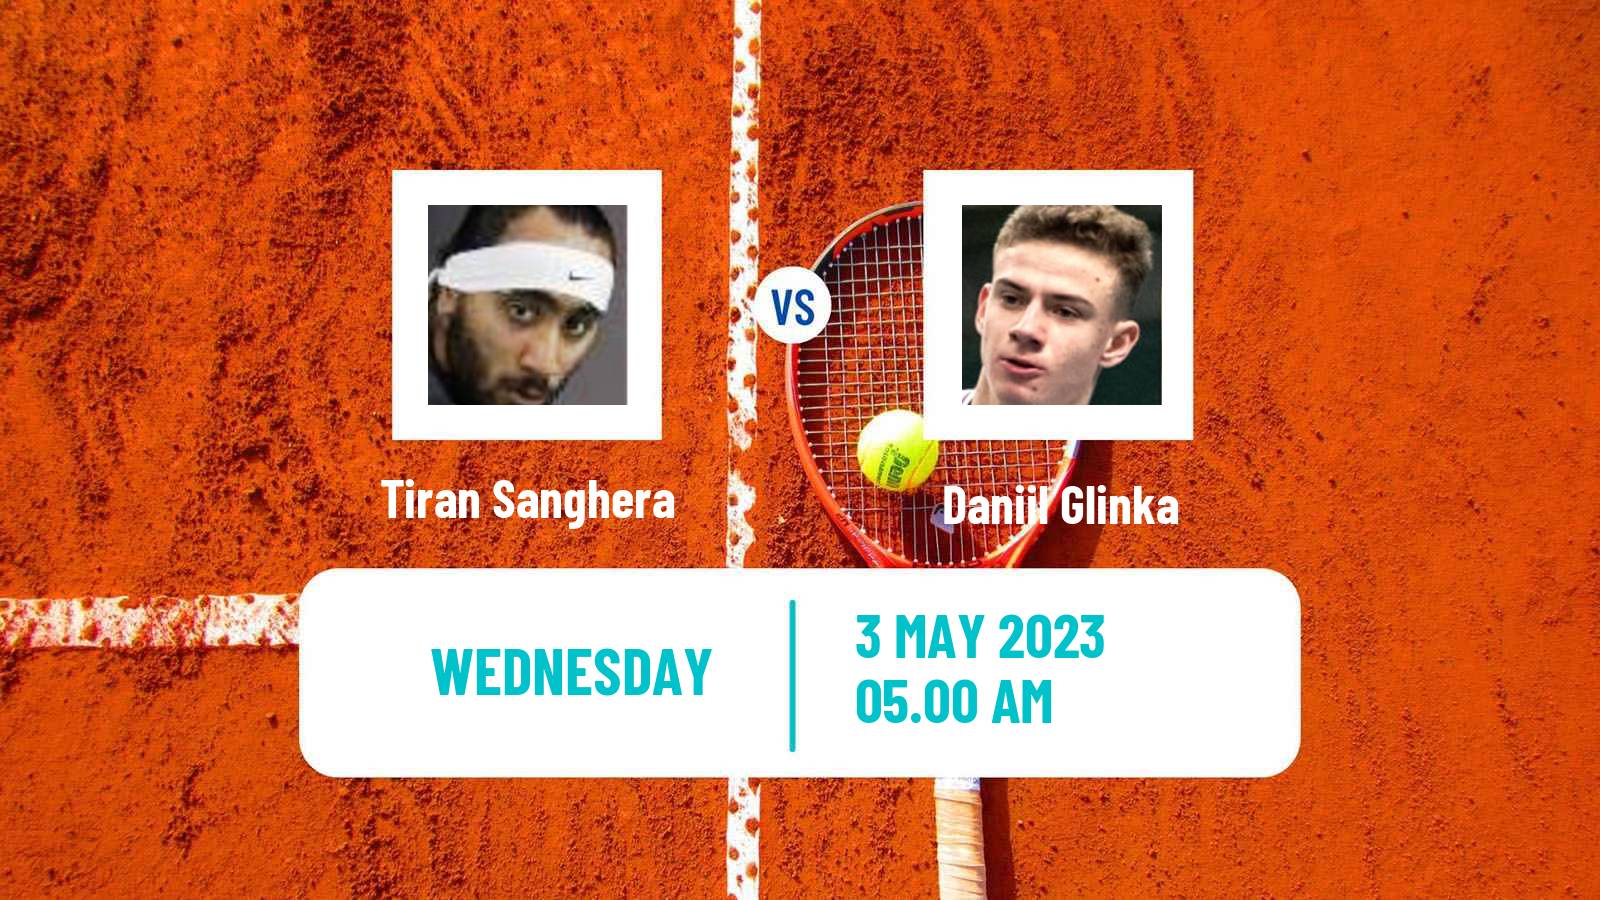 Tennis ITF Tournaments Tiran Sanghera - Daniil Glinka